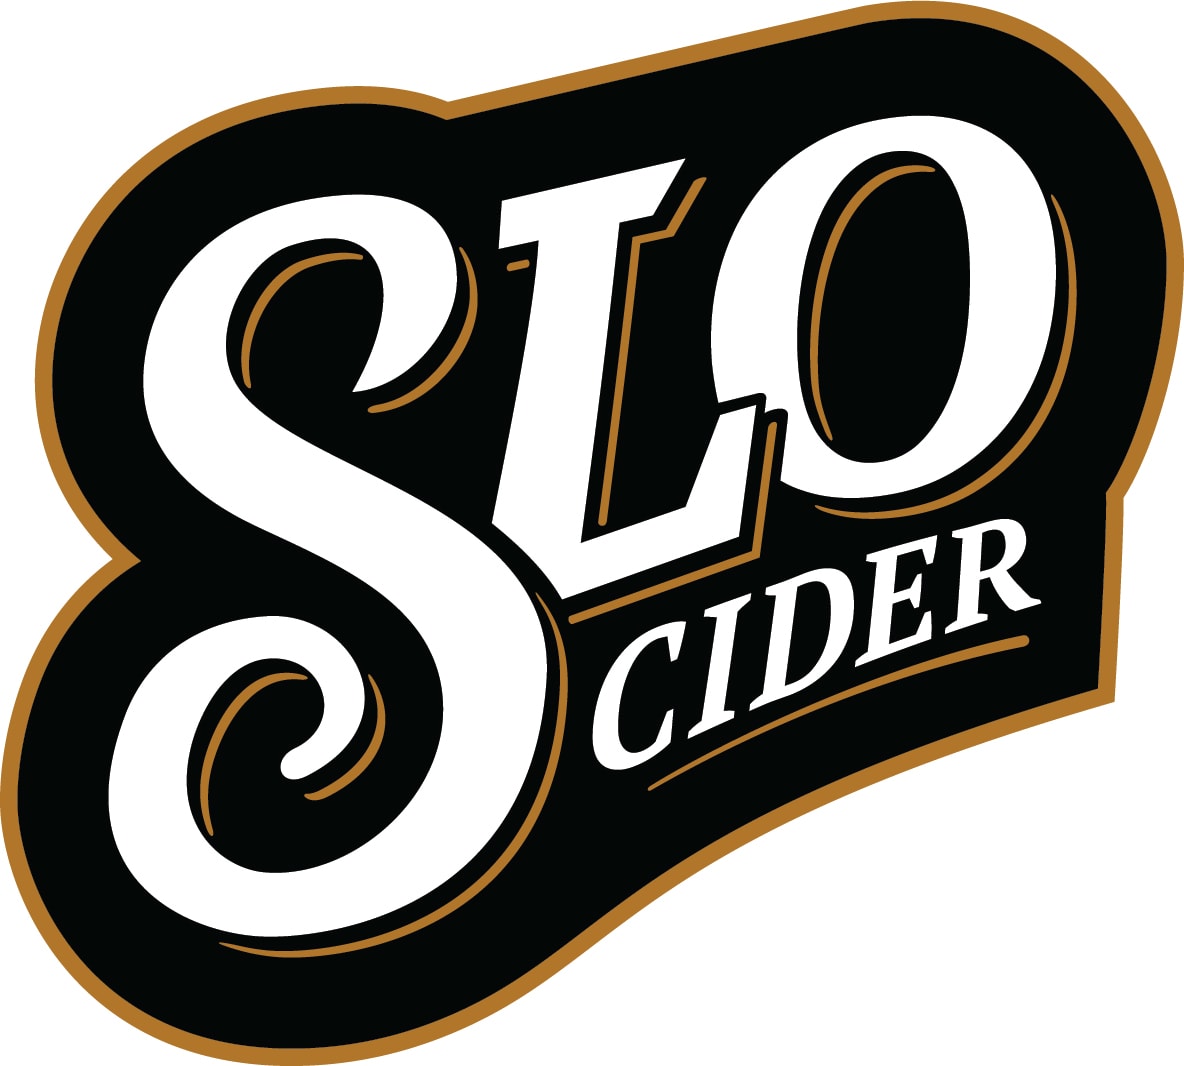 SLO Cider Co. logo